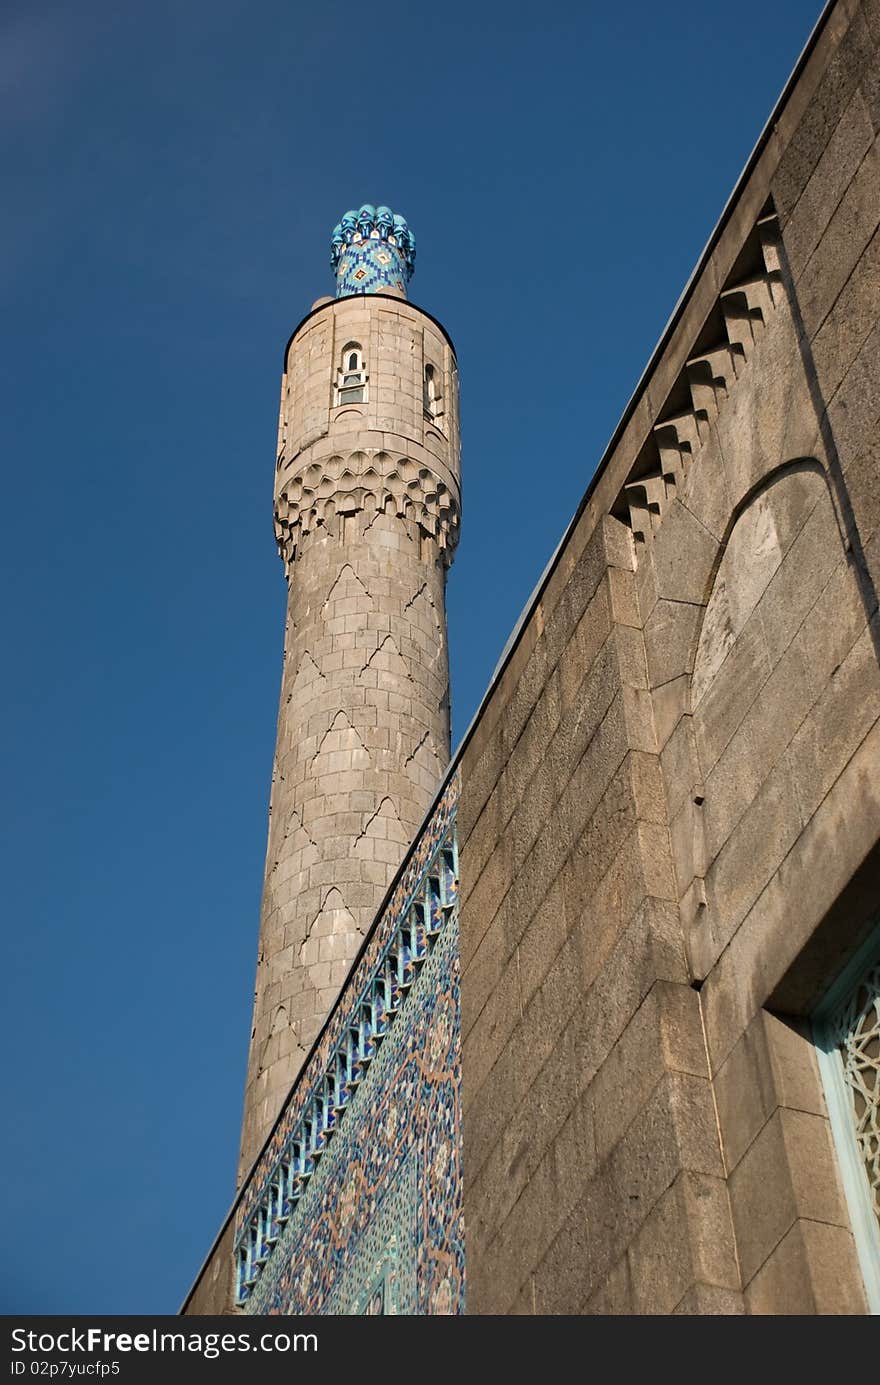 Minaret of mosque in S. Petersburg constructed in 1908-1920. Minaret of mosque in S. Petersburg constructed in 1908-1920.